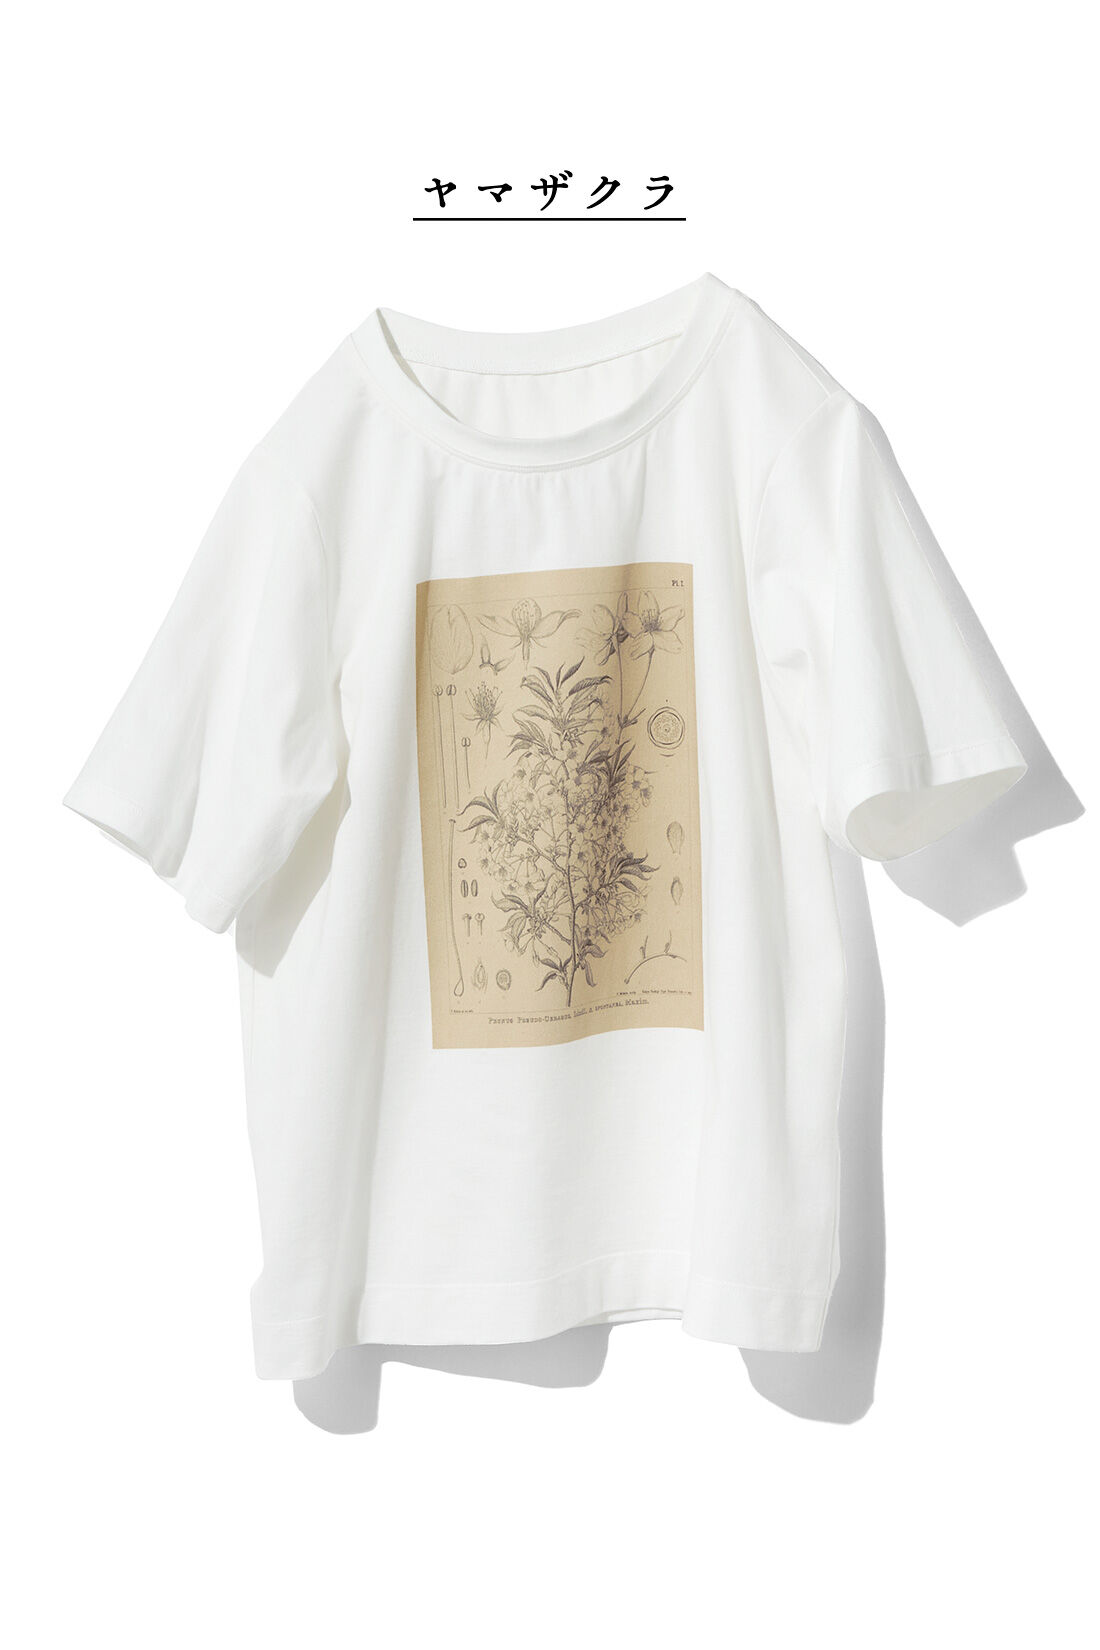 牧野植物園×IEDIT[イディット]コラボ　植物図Tシャツ〈コウシンソウ〉